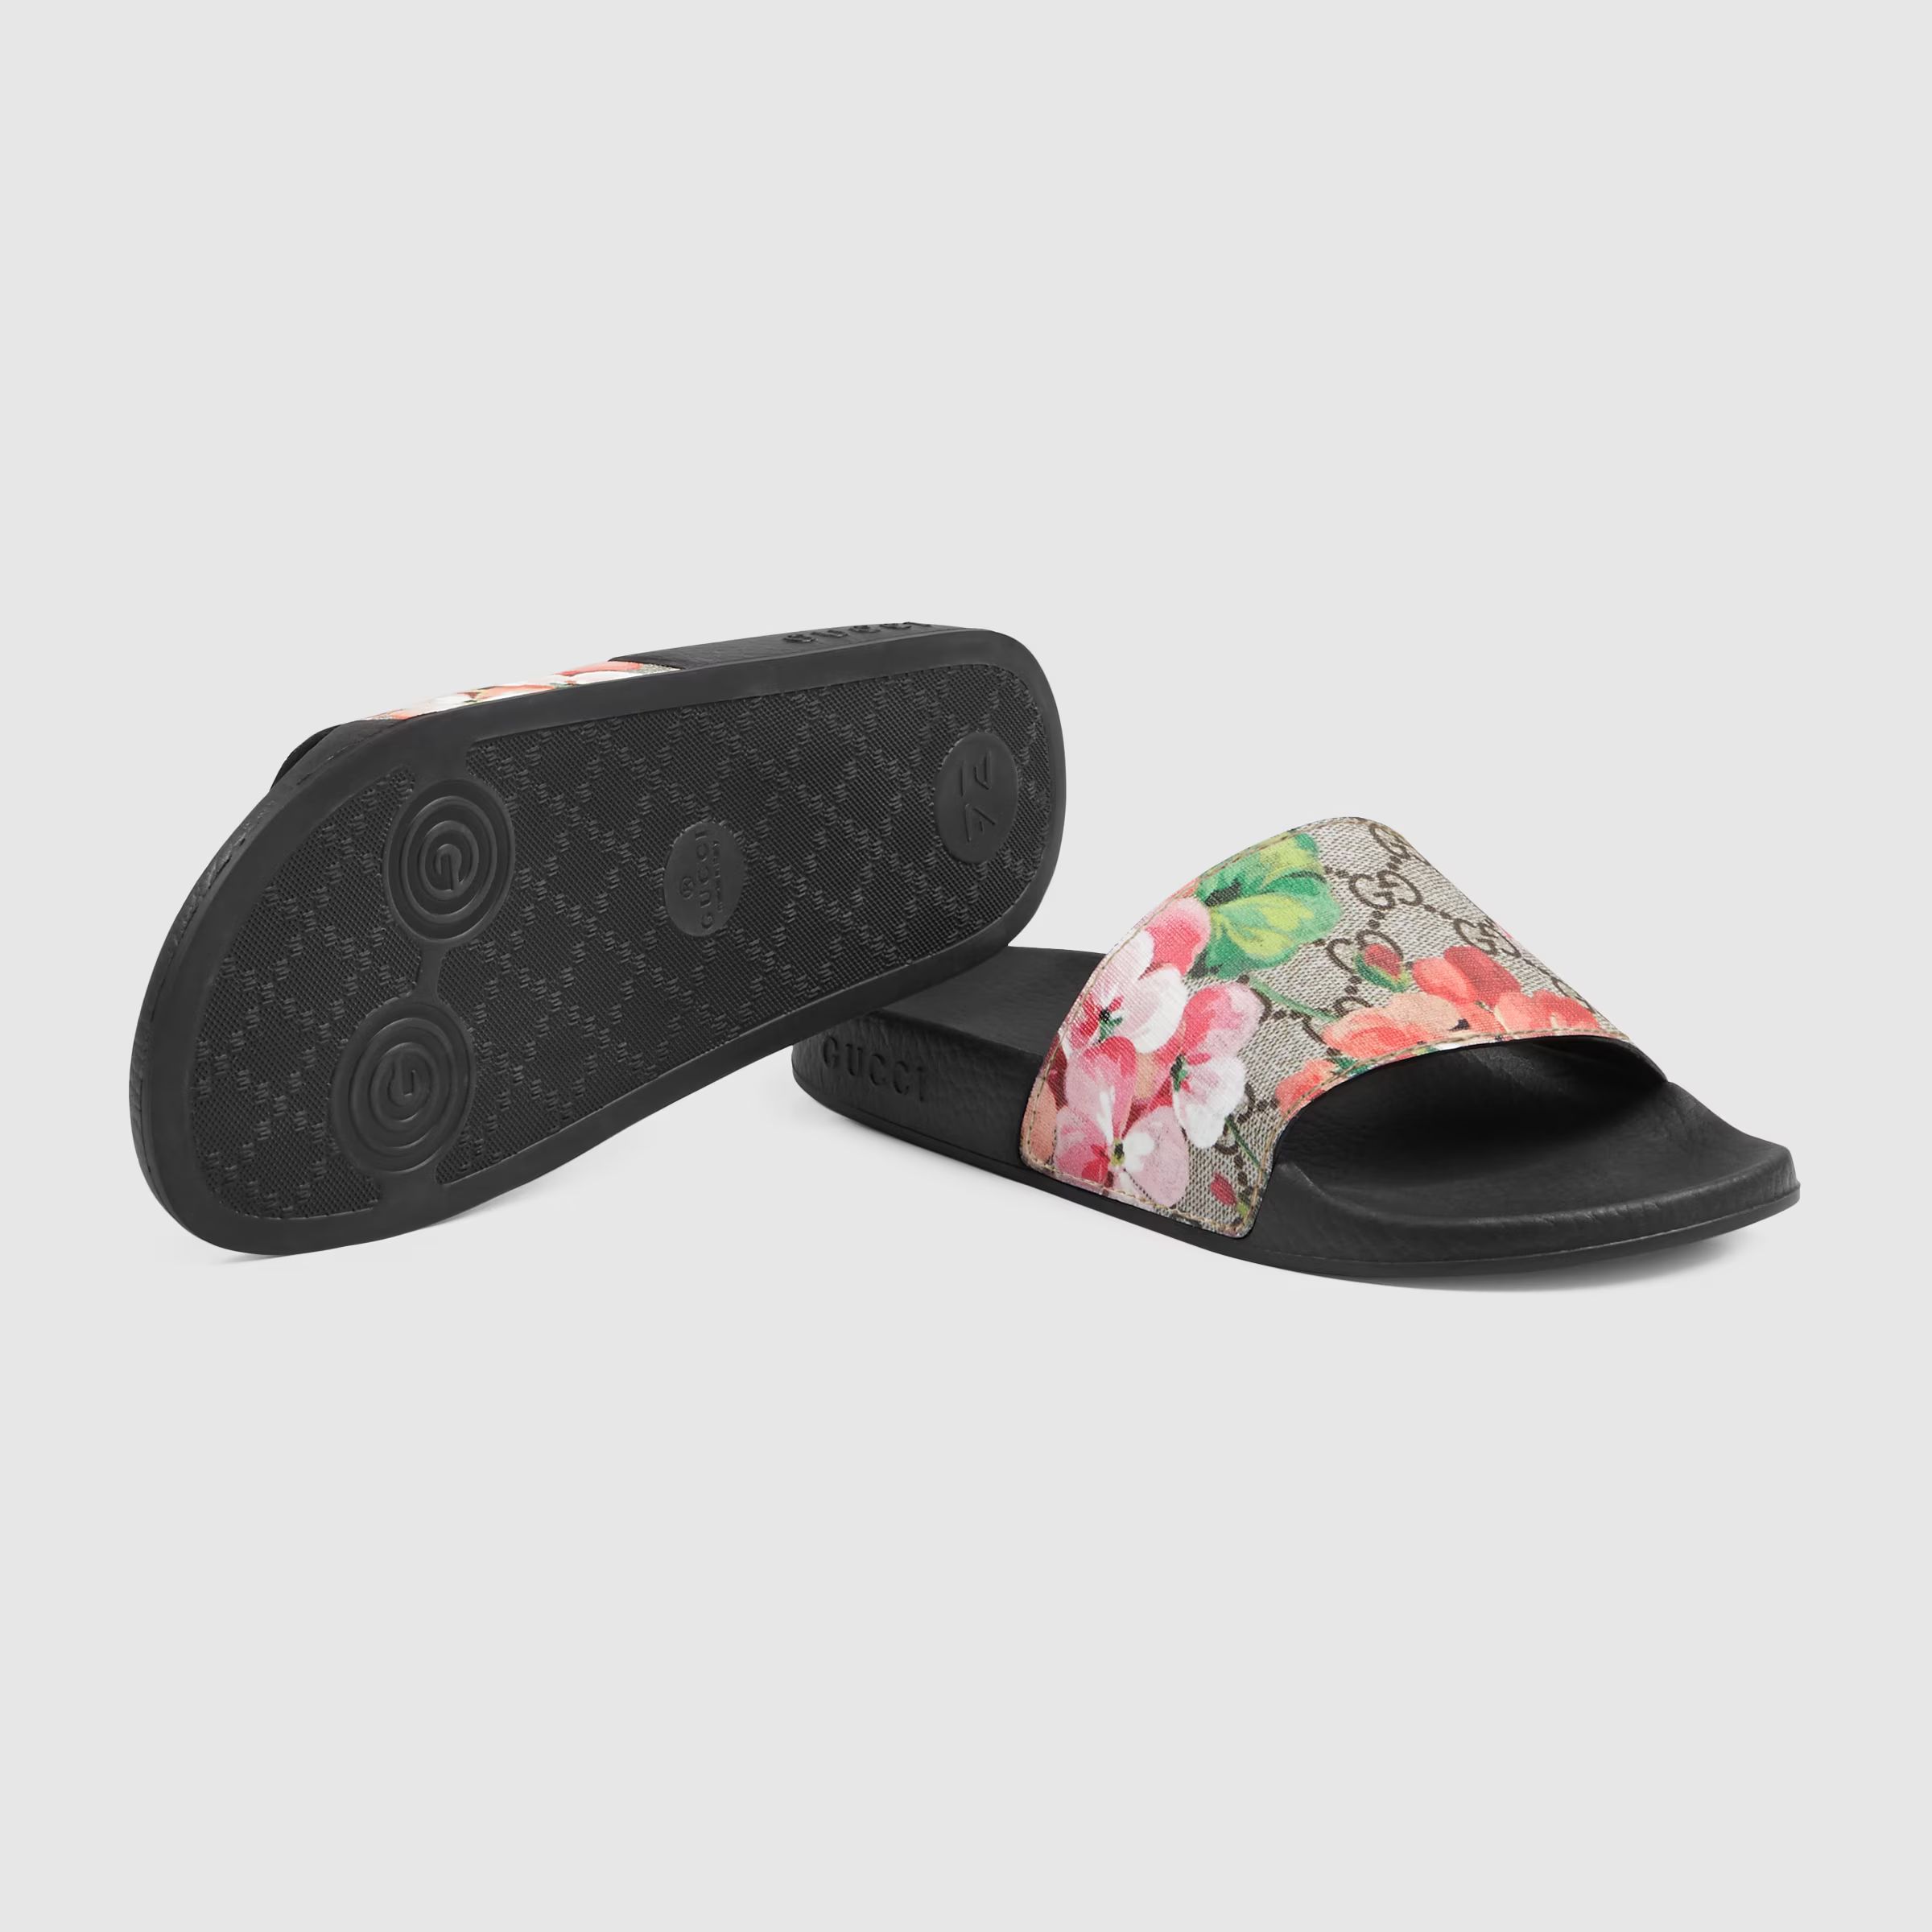 GG Blooms Supreme floral slide sandal | Gucci (US)